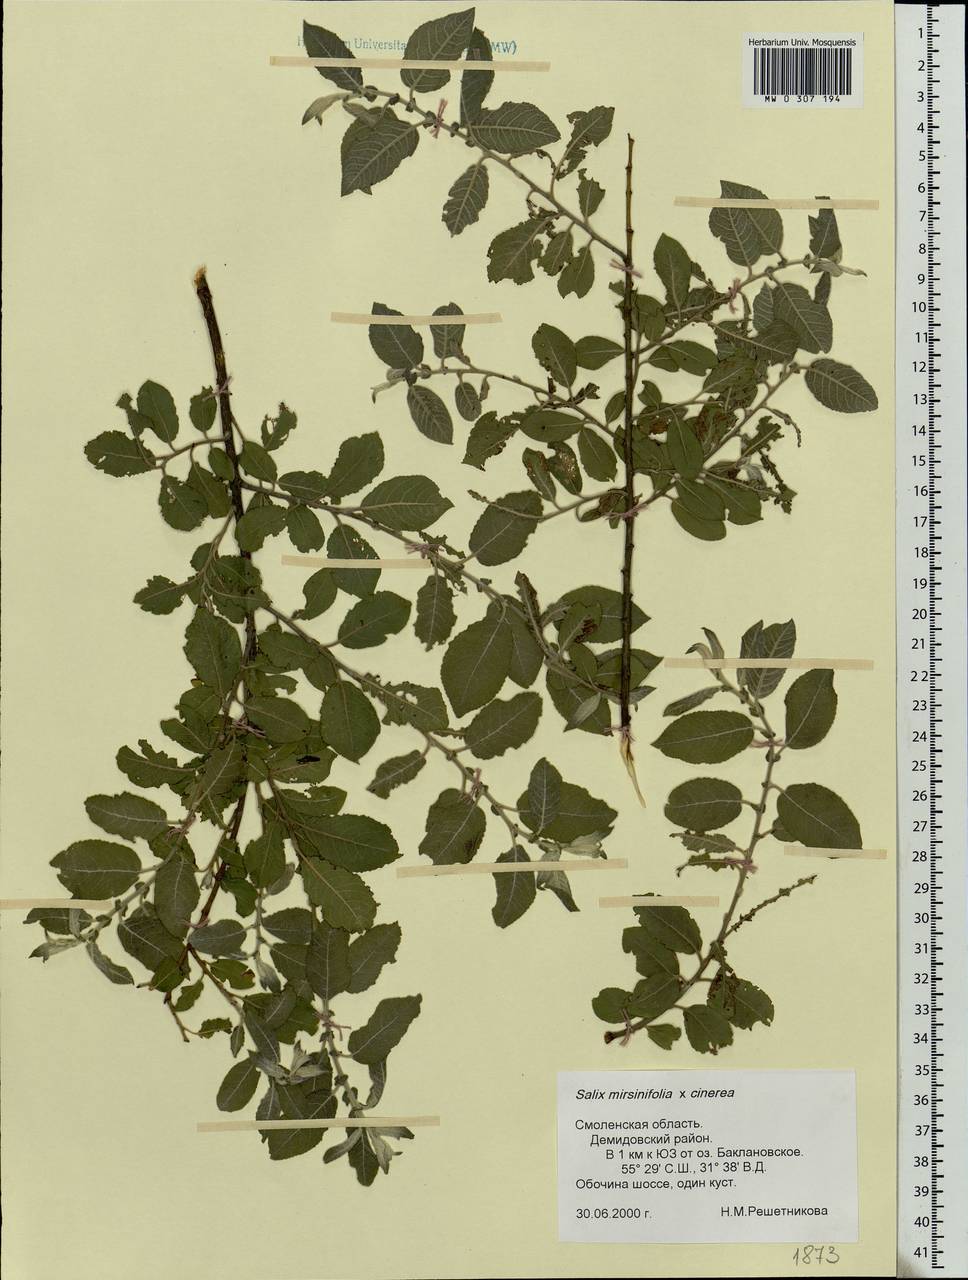 Salix vaudensis Schleich. ex J.Forbes, Eastern Europe, Western region (E3) (Russia)